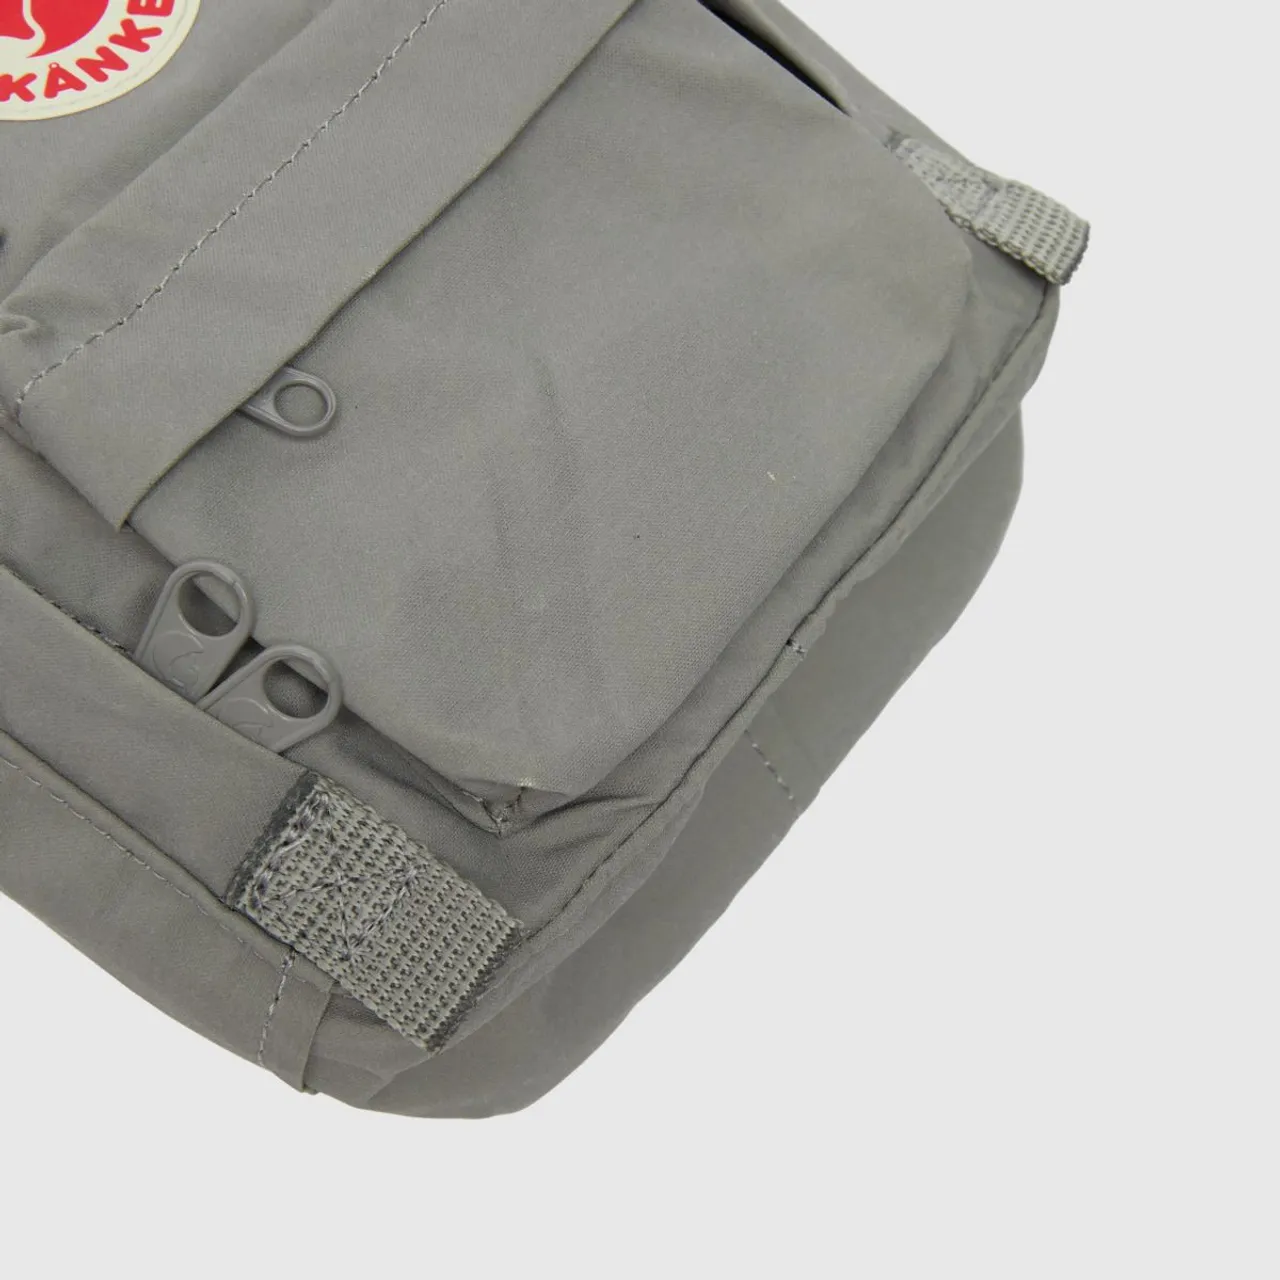 Fjallraven Kanken Grey Sling Bag, Size: 2.5L